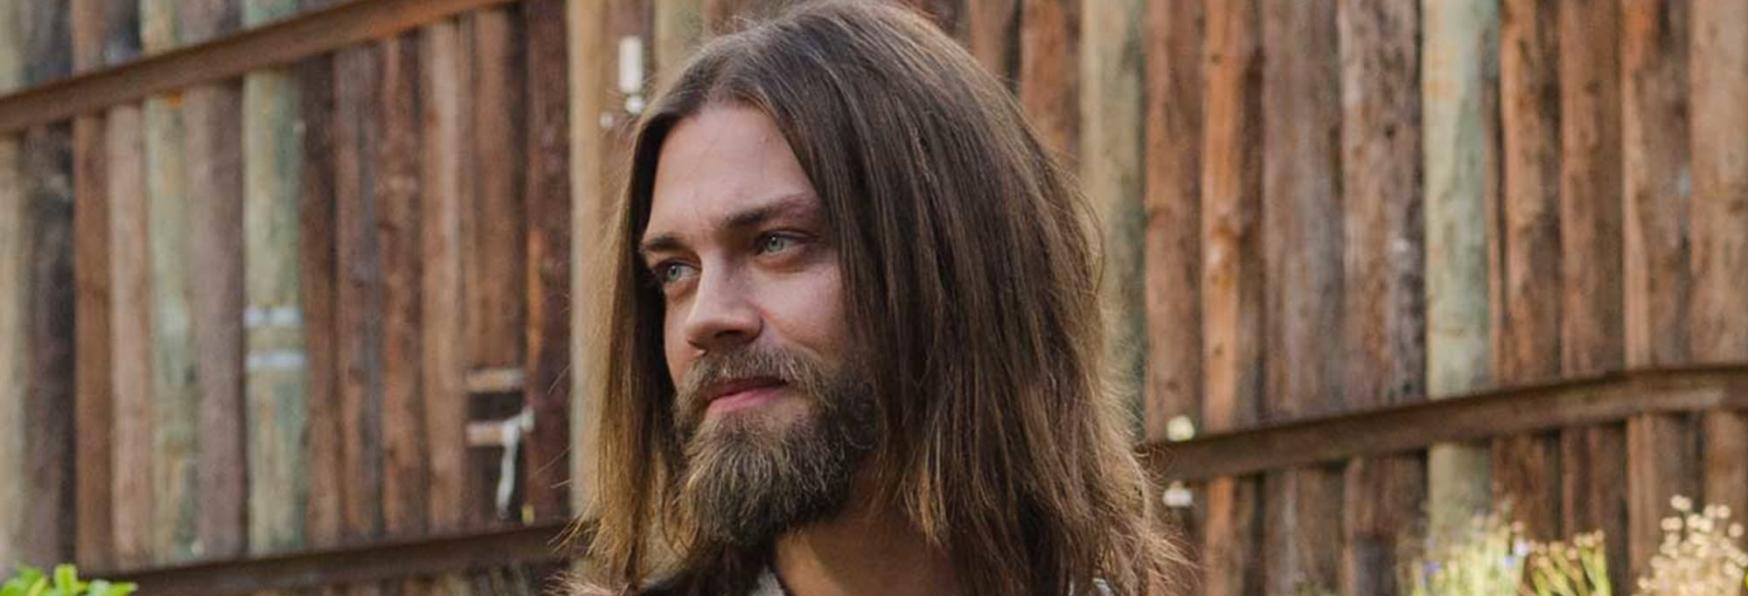 The Walking Dead 9: Tom Payne parla di una Scena Cancellata riguardante Jesus